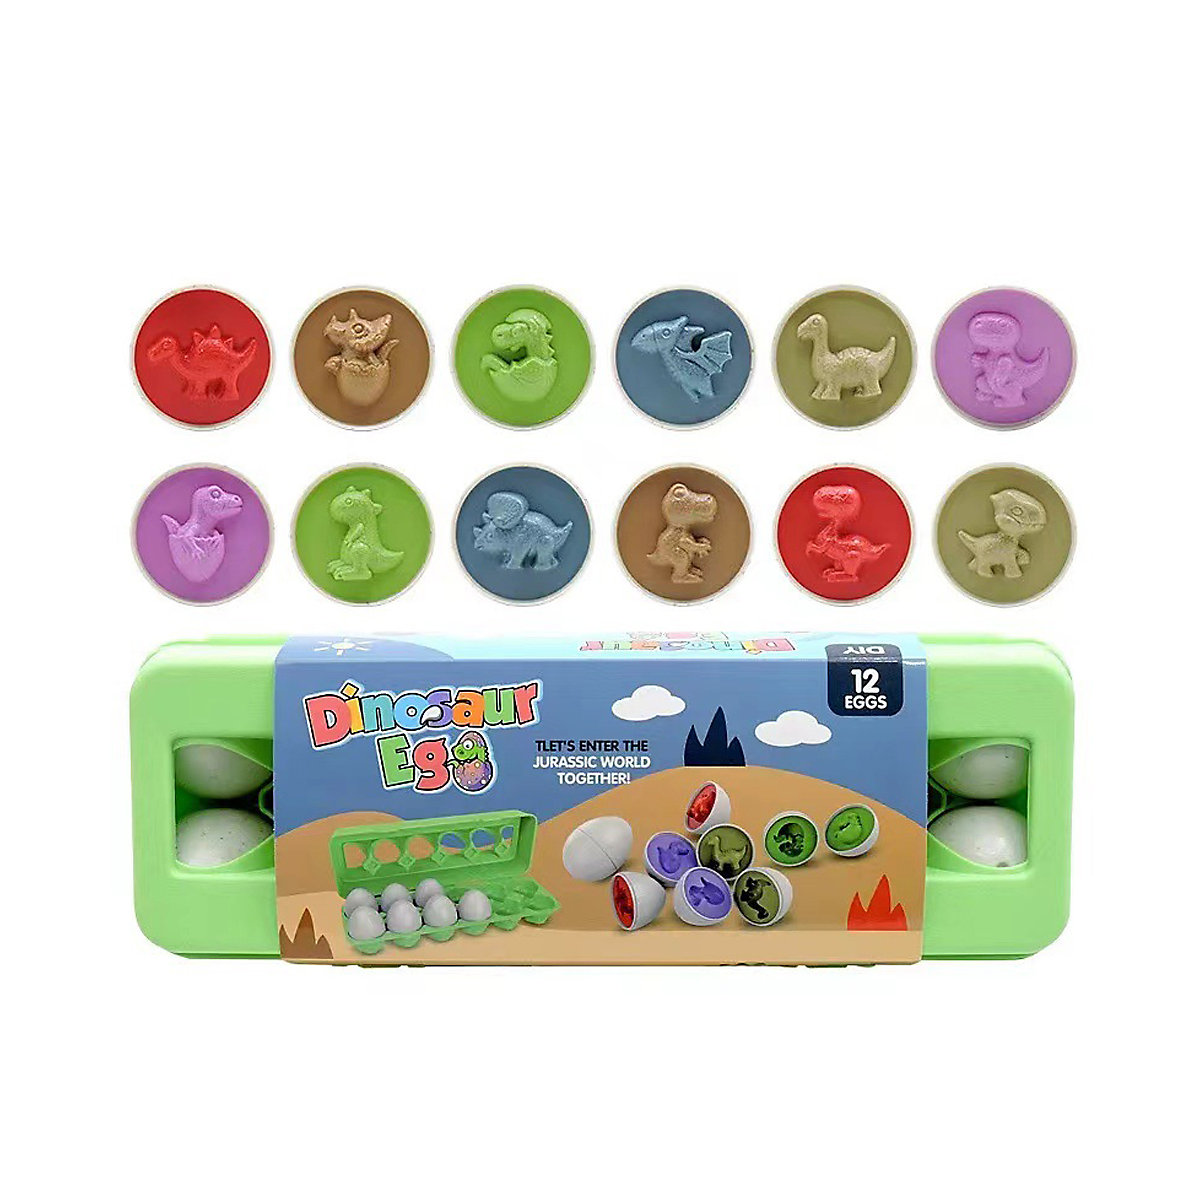 Vicabo Auto Passenden Spielzeug Eier Farbe Form Geometrische Lernspielzeug Pädagogisches Spielzeug Lernspiele für Kinder